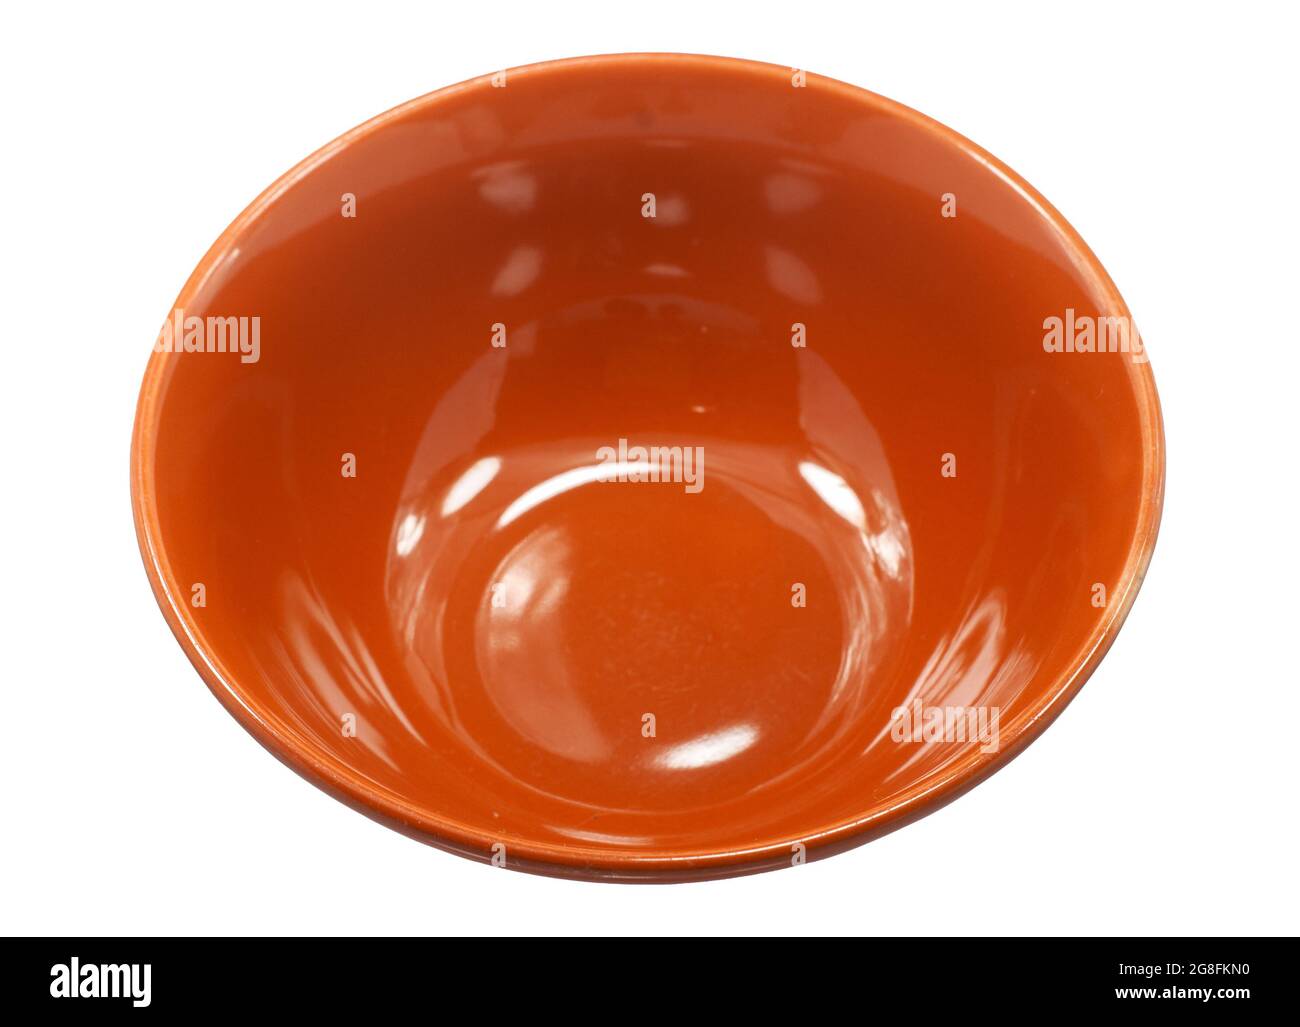 ceramic bowl isolated on white background Stock Photo